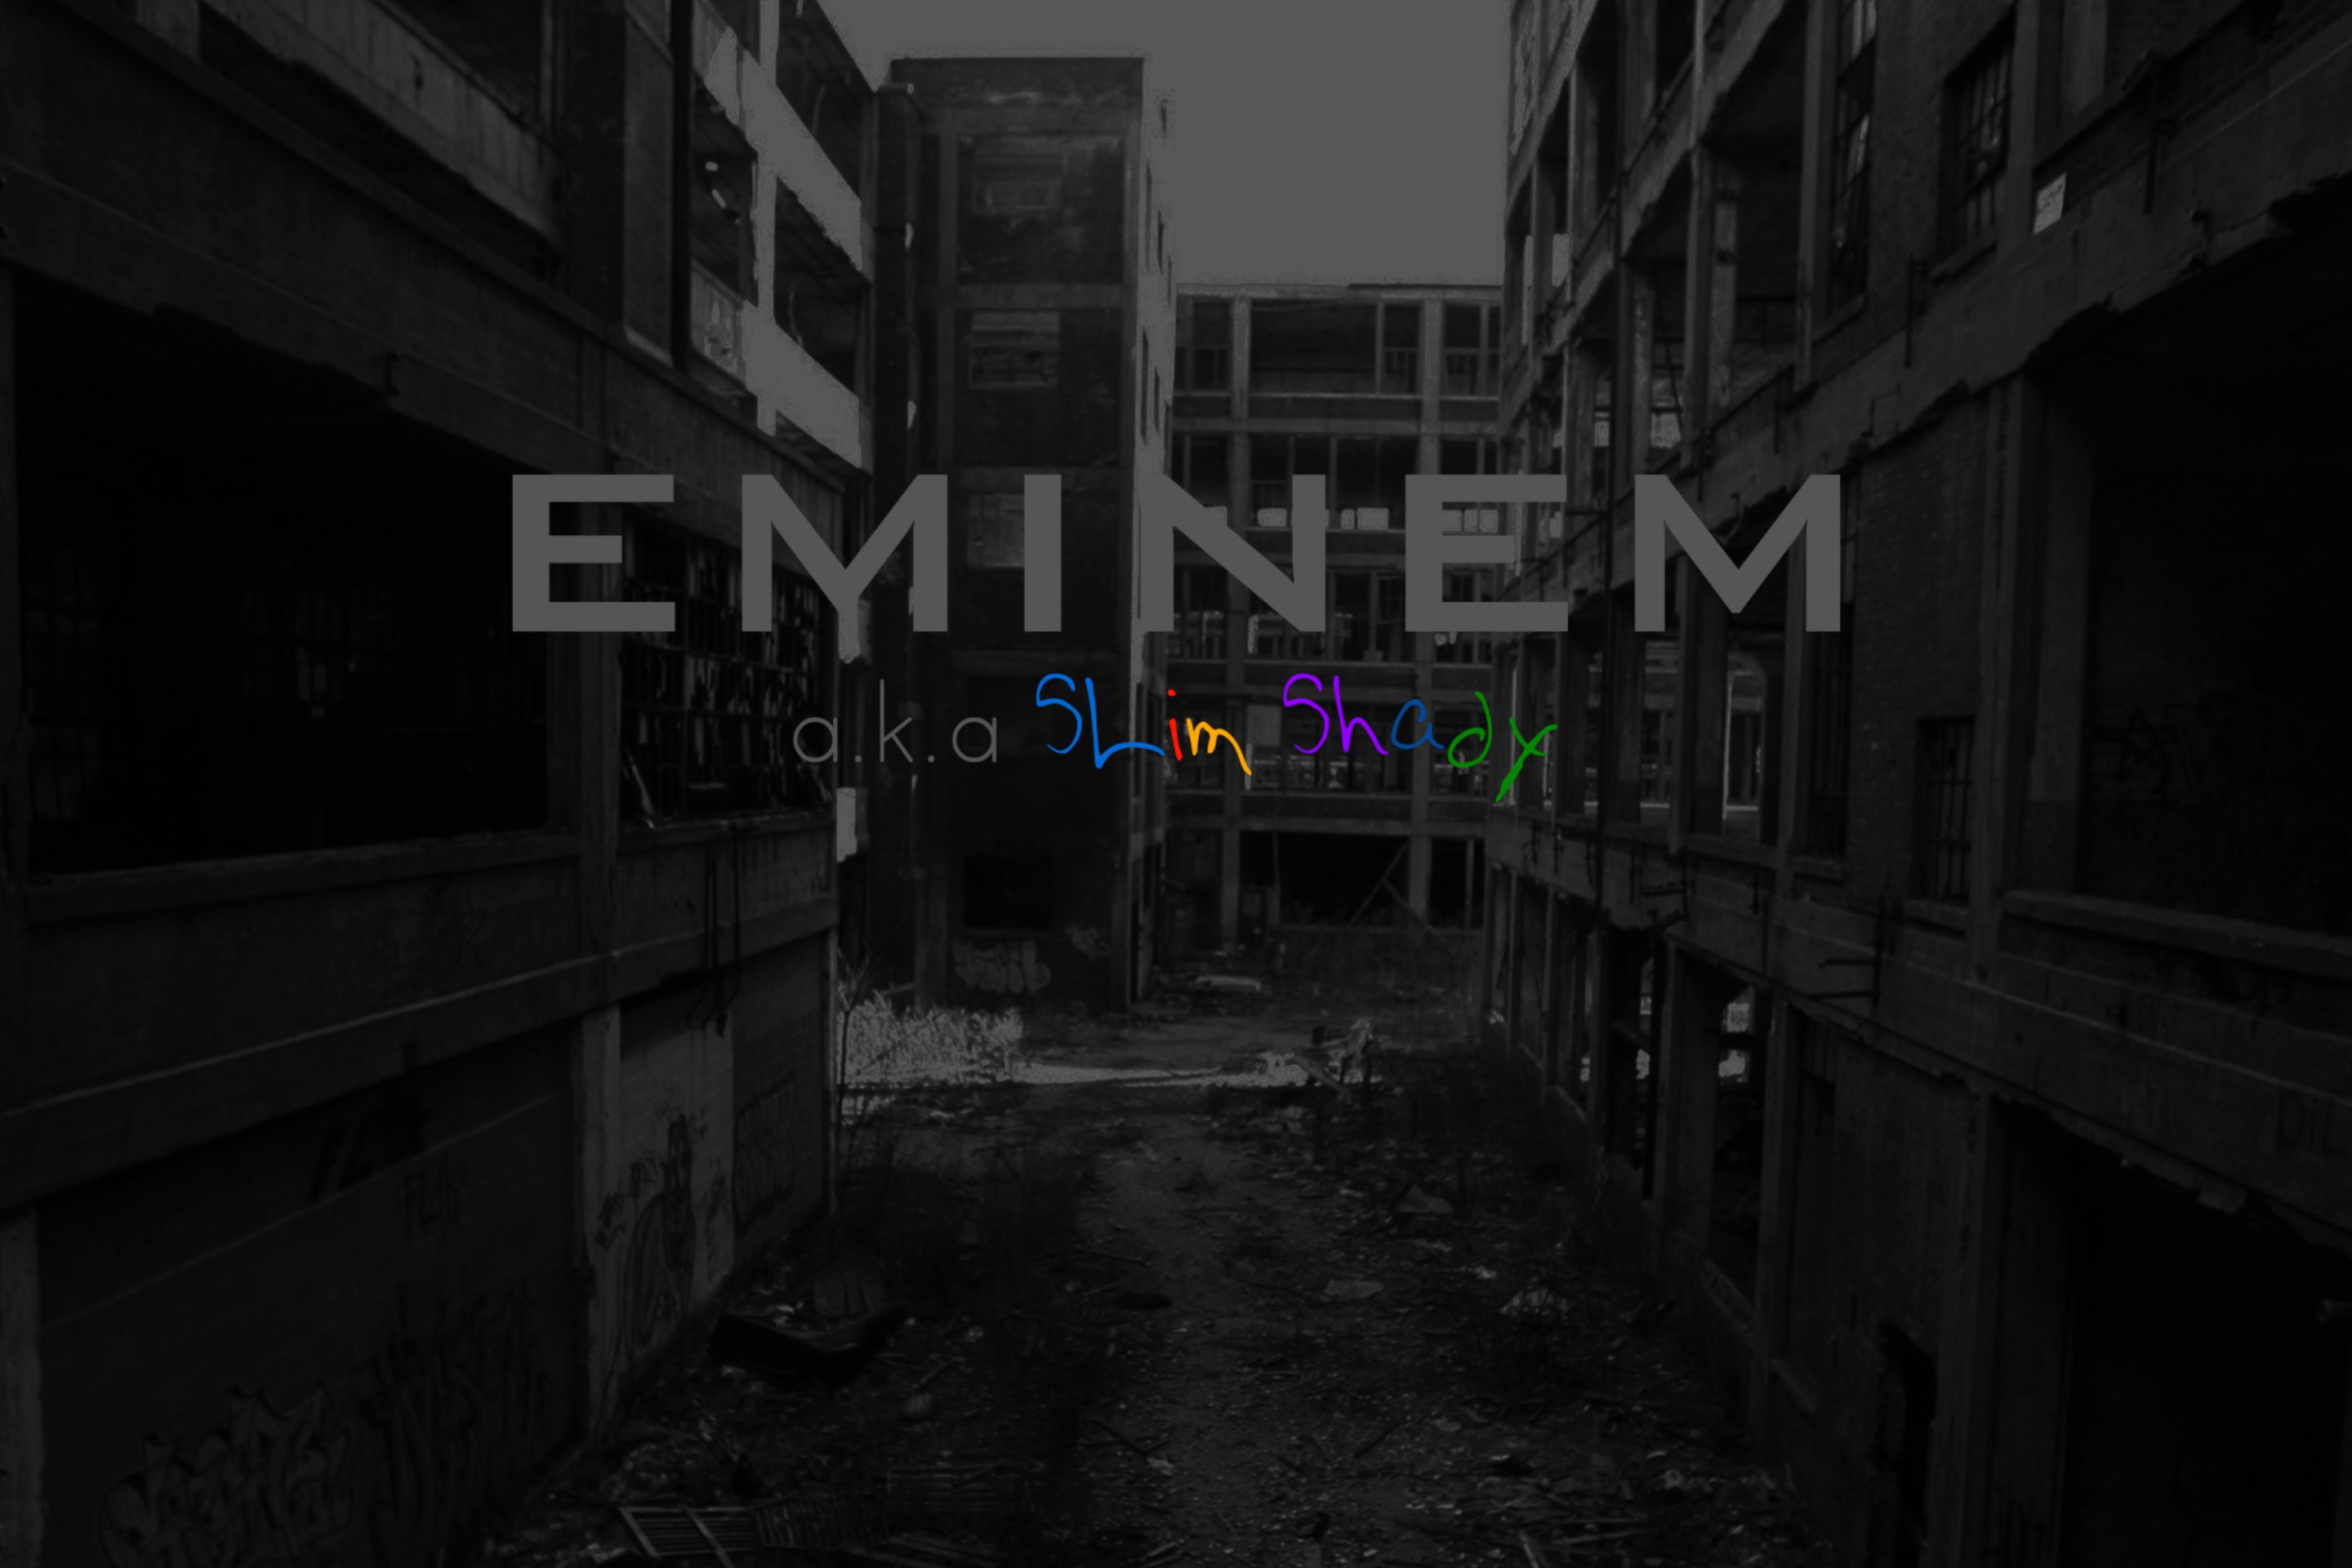 Eminem - Slim Shady wallpaper 2880x1920